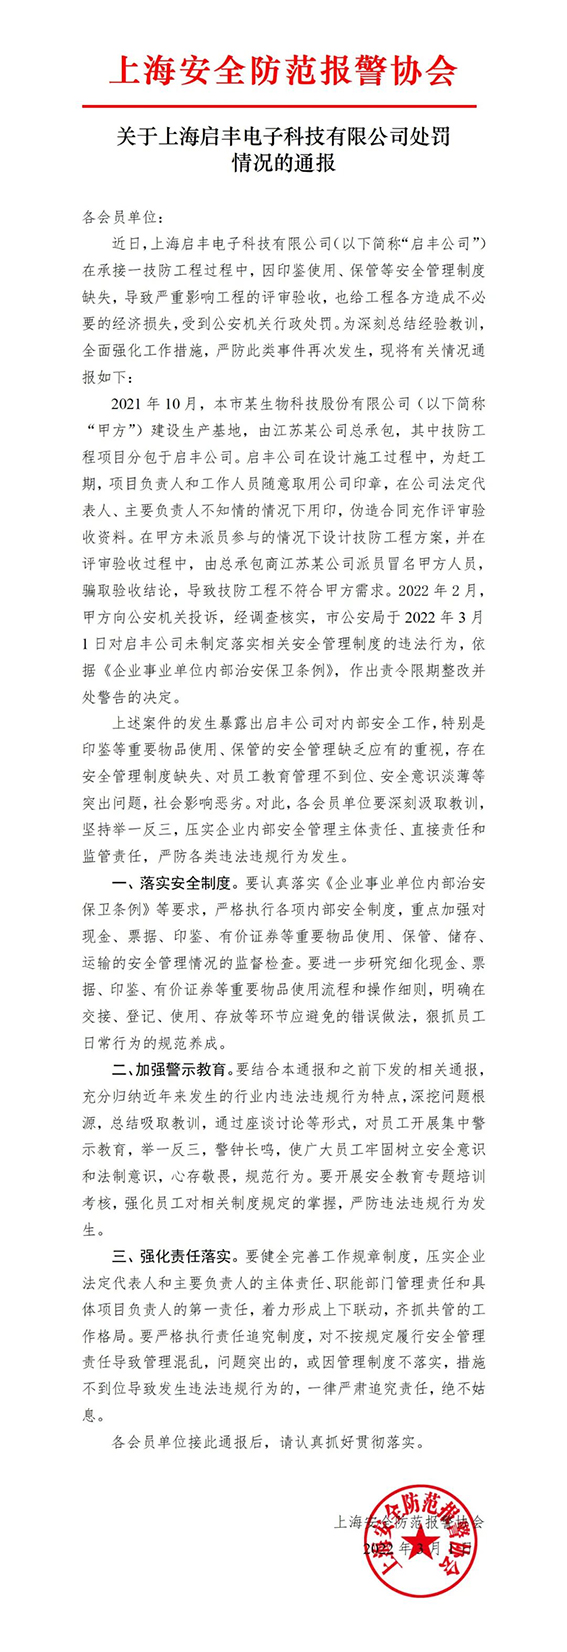 关于上海启丰电子科技有限企业处罚情况的通报w.jpg